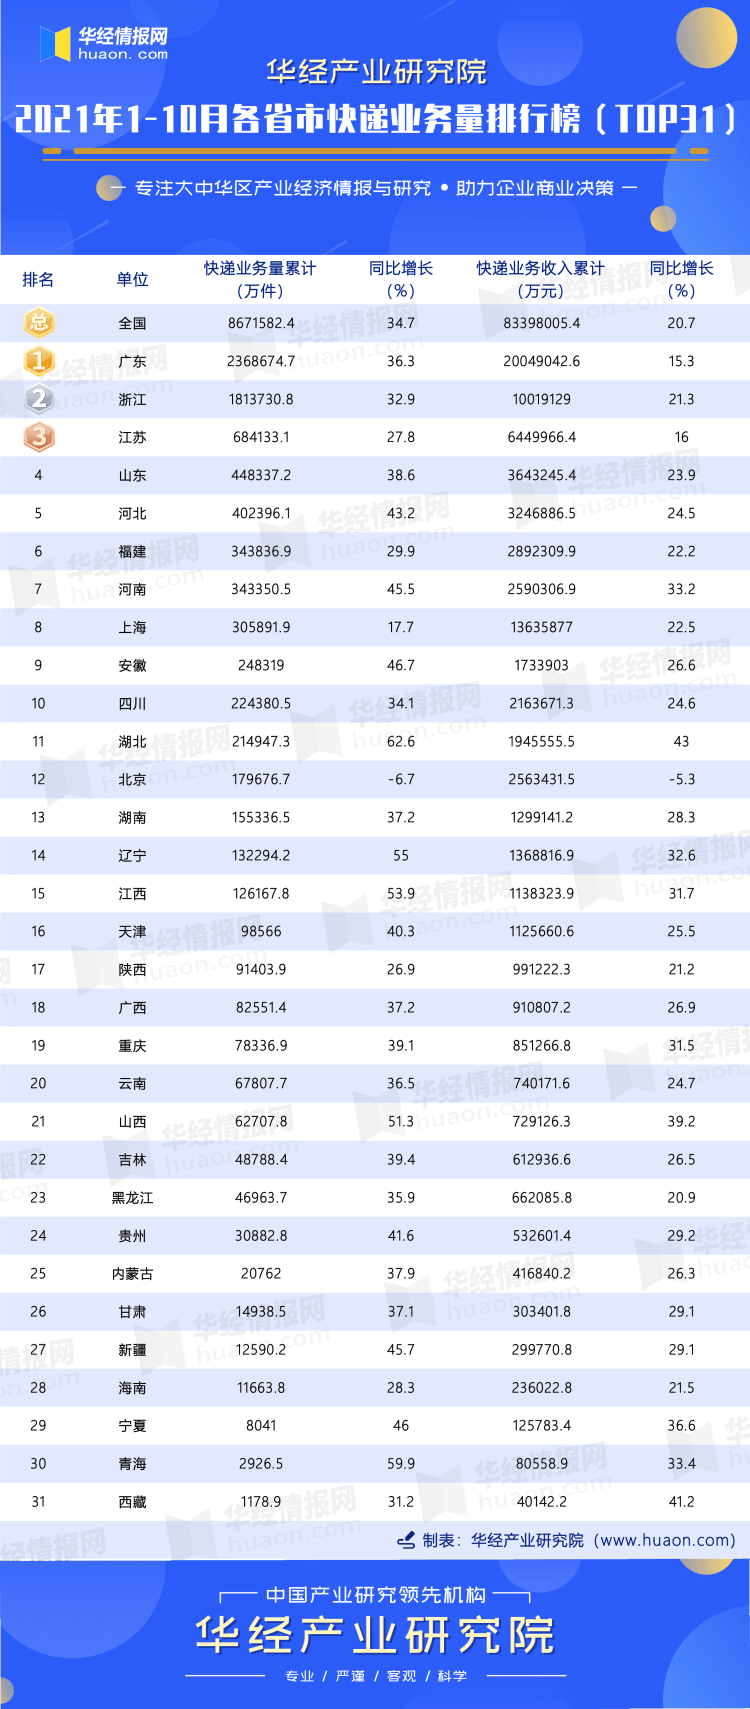 广东快递排行_2021年1-10月各省市快递业务量排行榜:广东和浙江业务量达百亿件